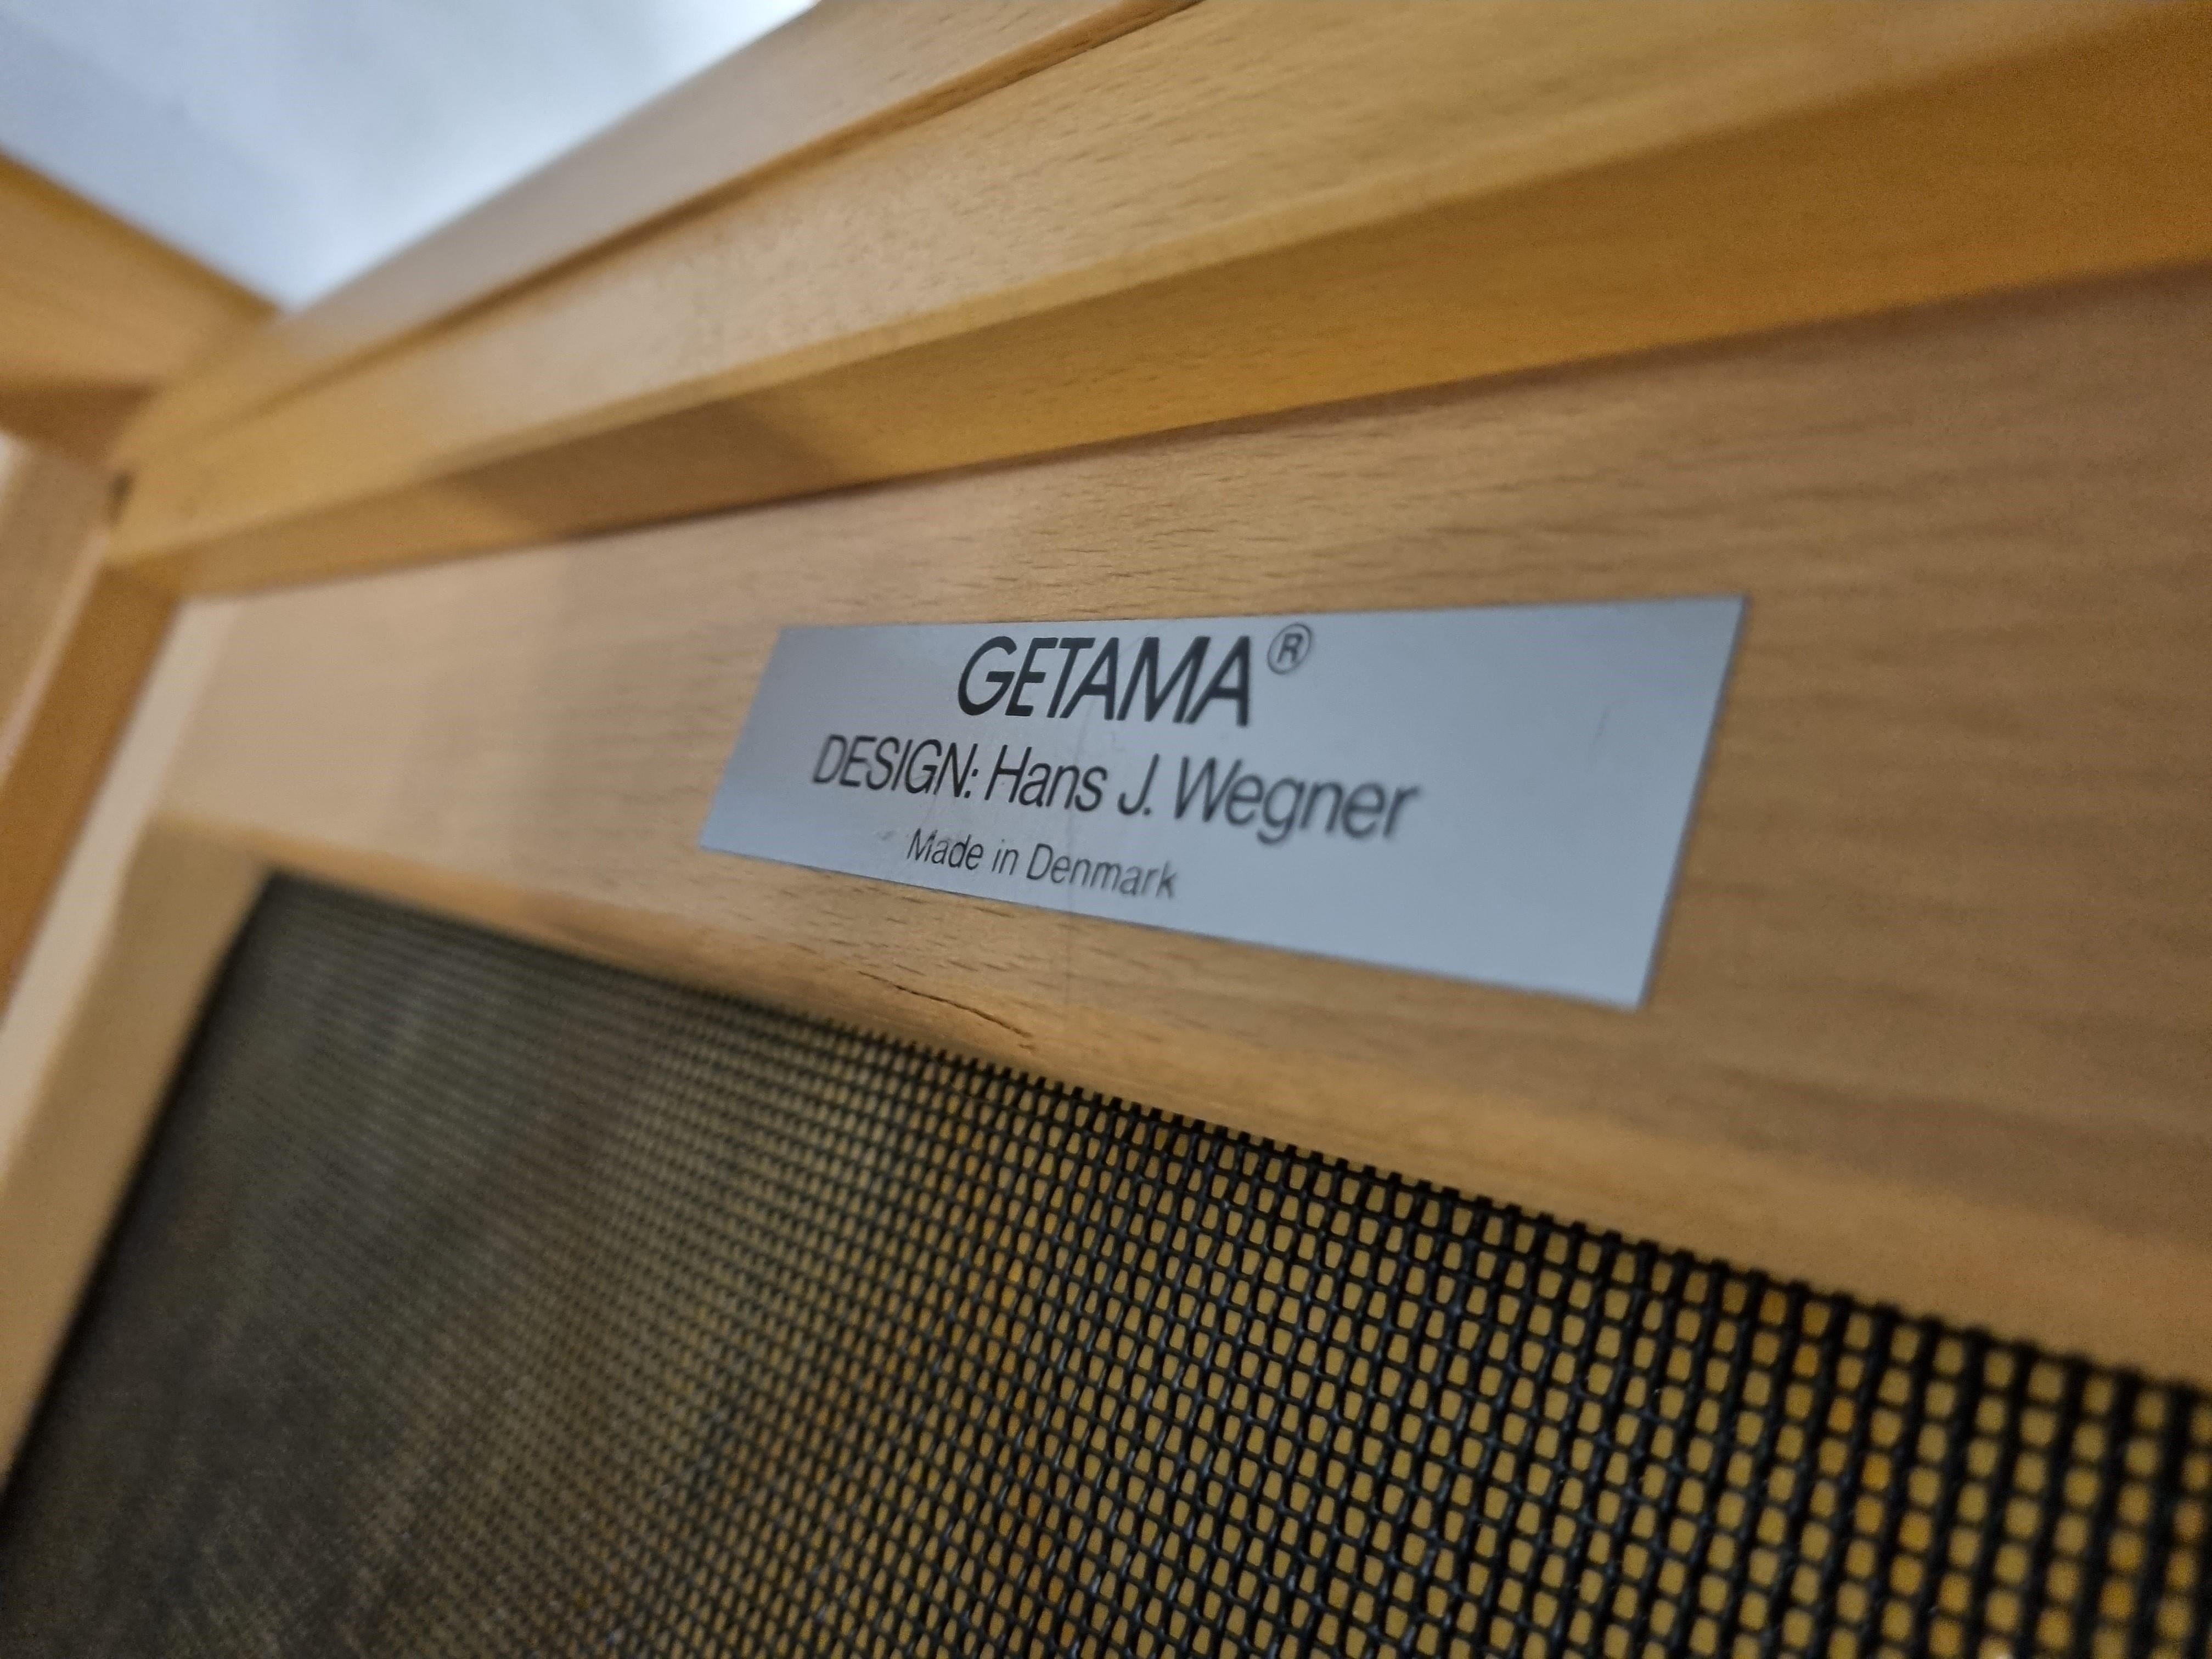 Seltenes modulares Sofa, entworfen von einem der besten Designer der Jahrhundertmitte, Hans J. Wegner, für Getama.
Modell GE 280.

Das modulare Sofa besteht aus einem schönen Bugholzrahmen aus Eiche mit schönen blauen Kissen.

Der Satz besteht